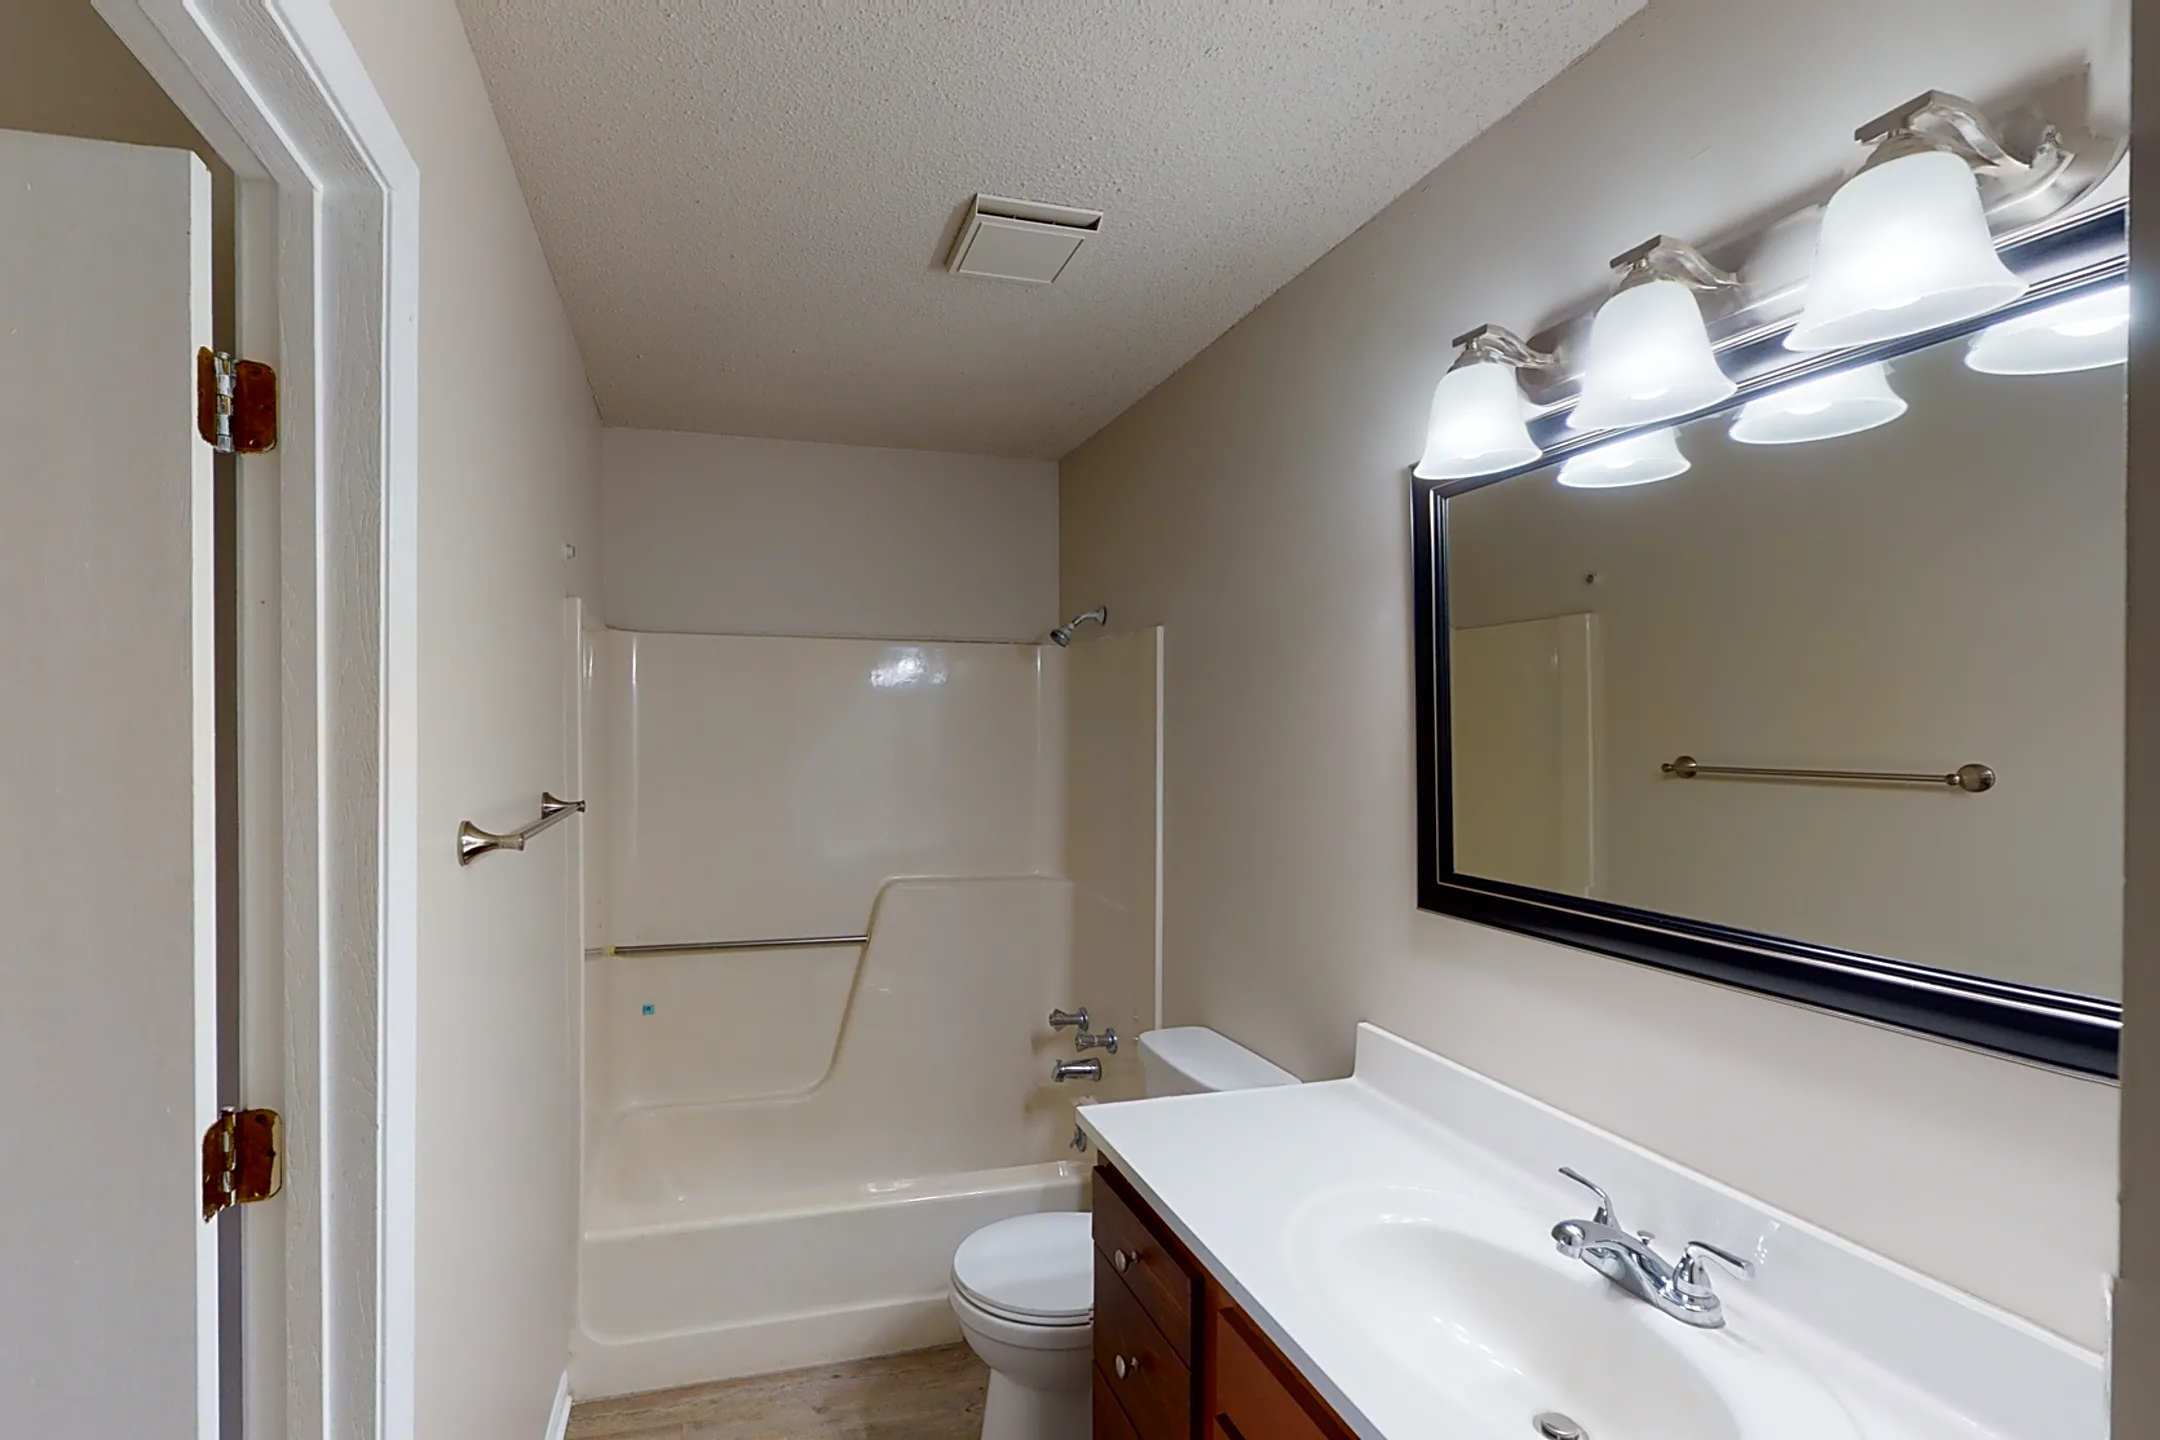 Bathroom - Midland Court - Shawnee, KS